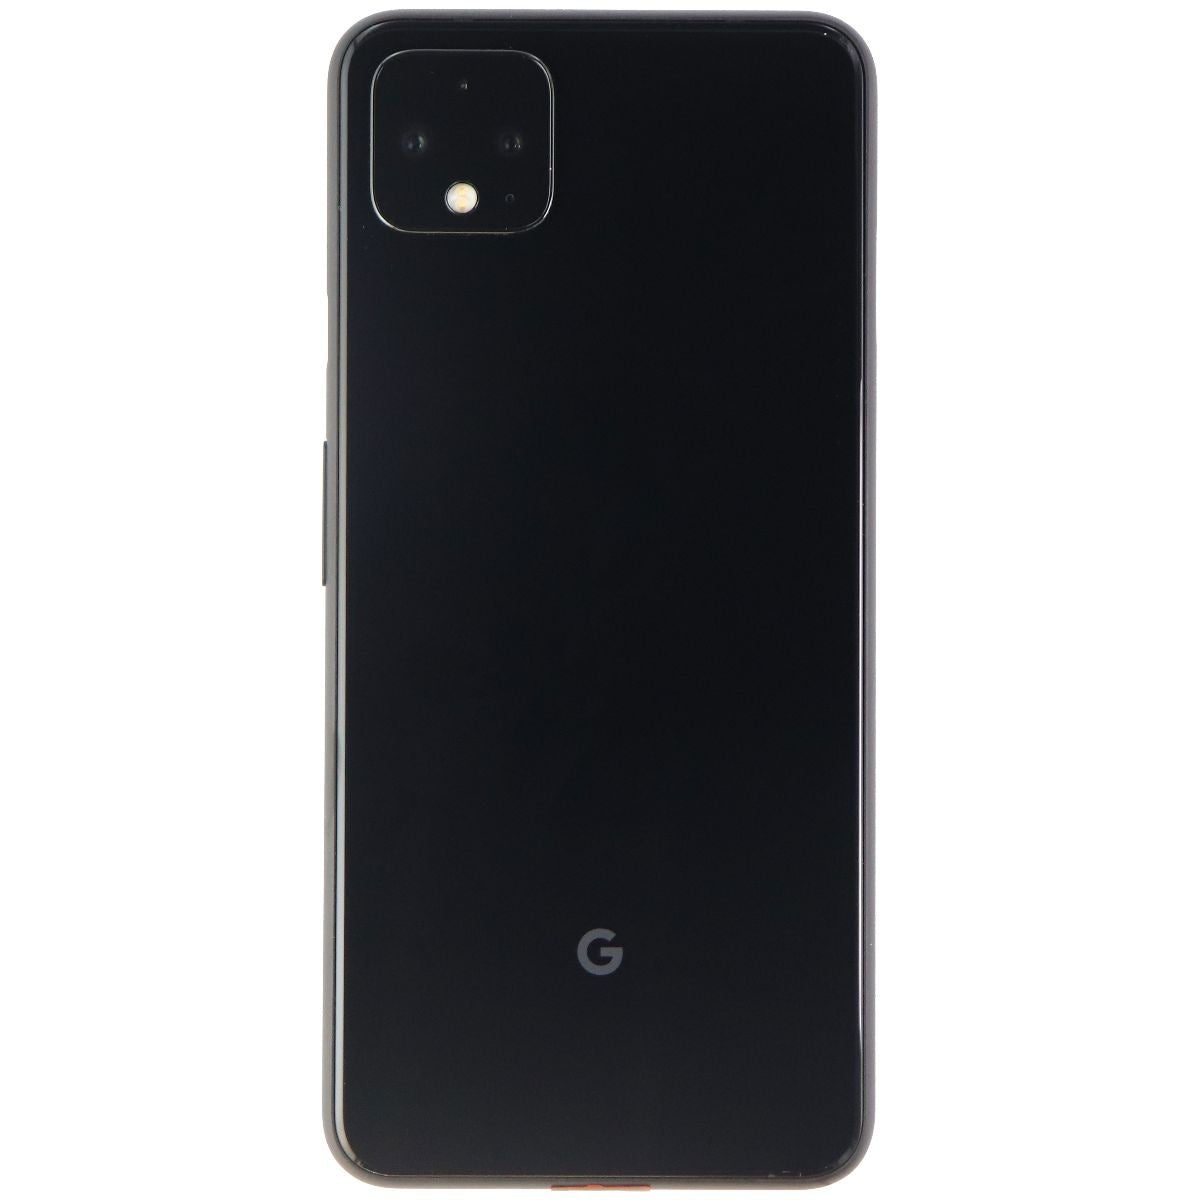 Google Pixel 4 XL (6.3-in) Smartphone (G020J) Unlocked - 64GB / Just Black